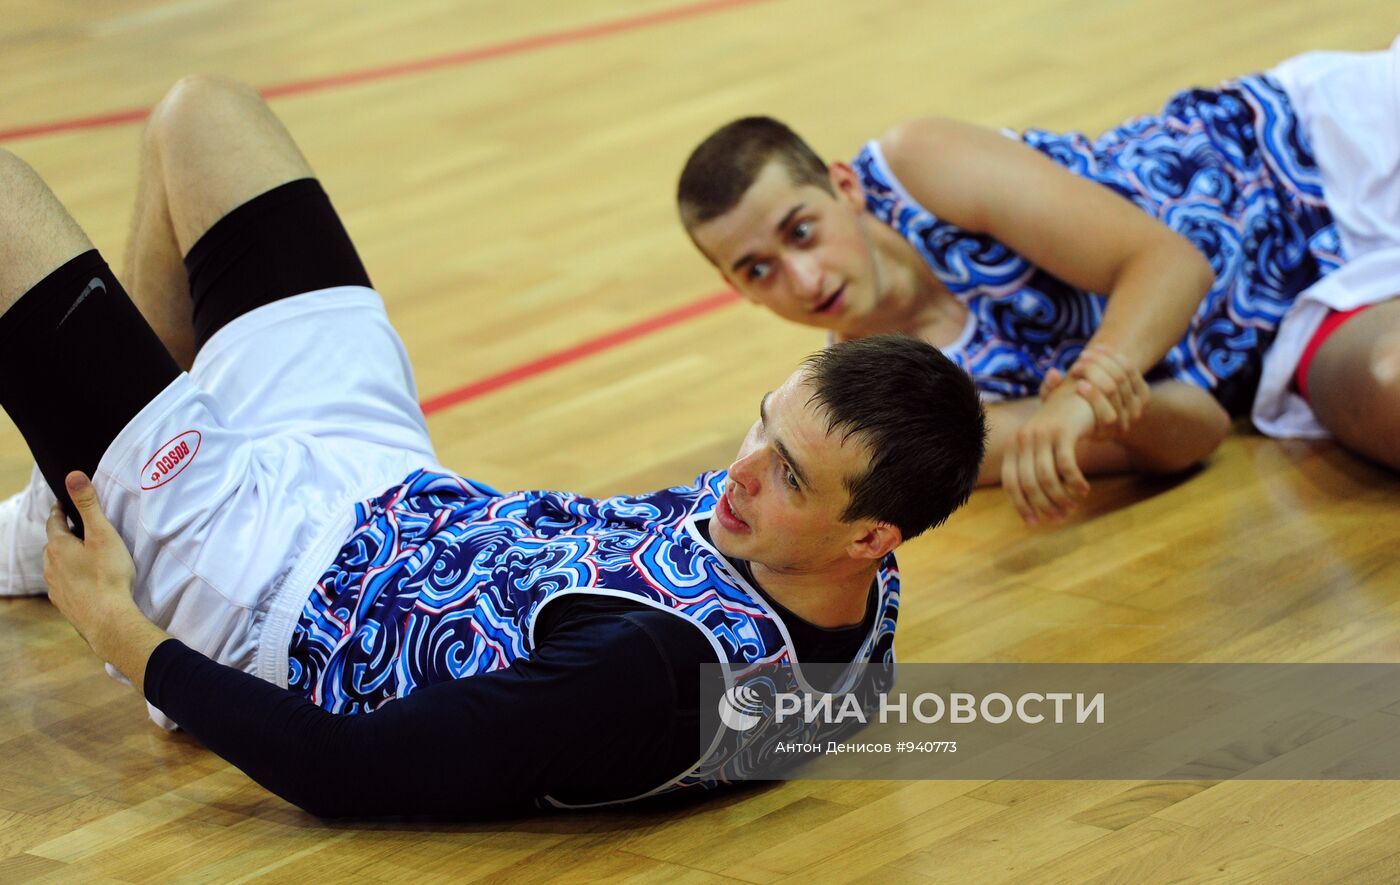 Баскетбол. Тренировка сборной России